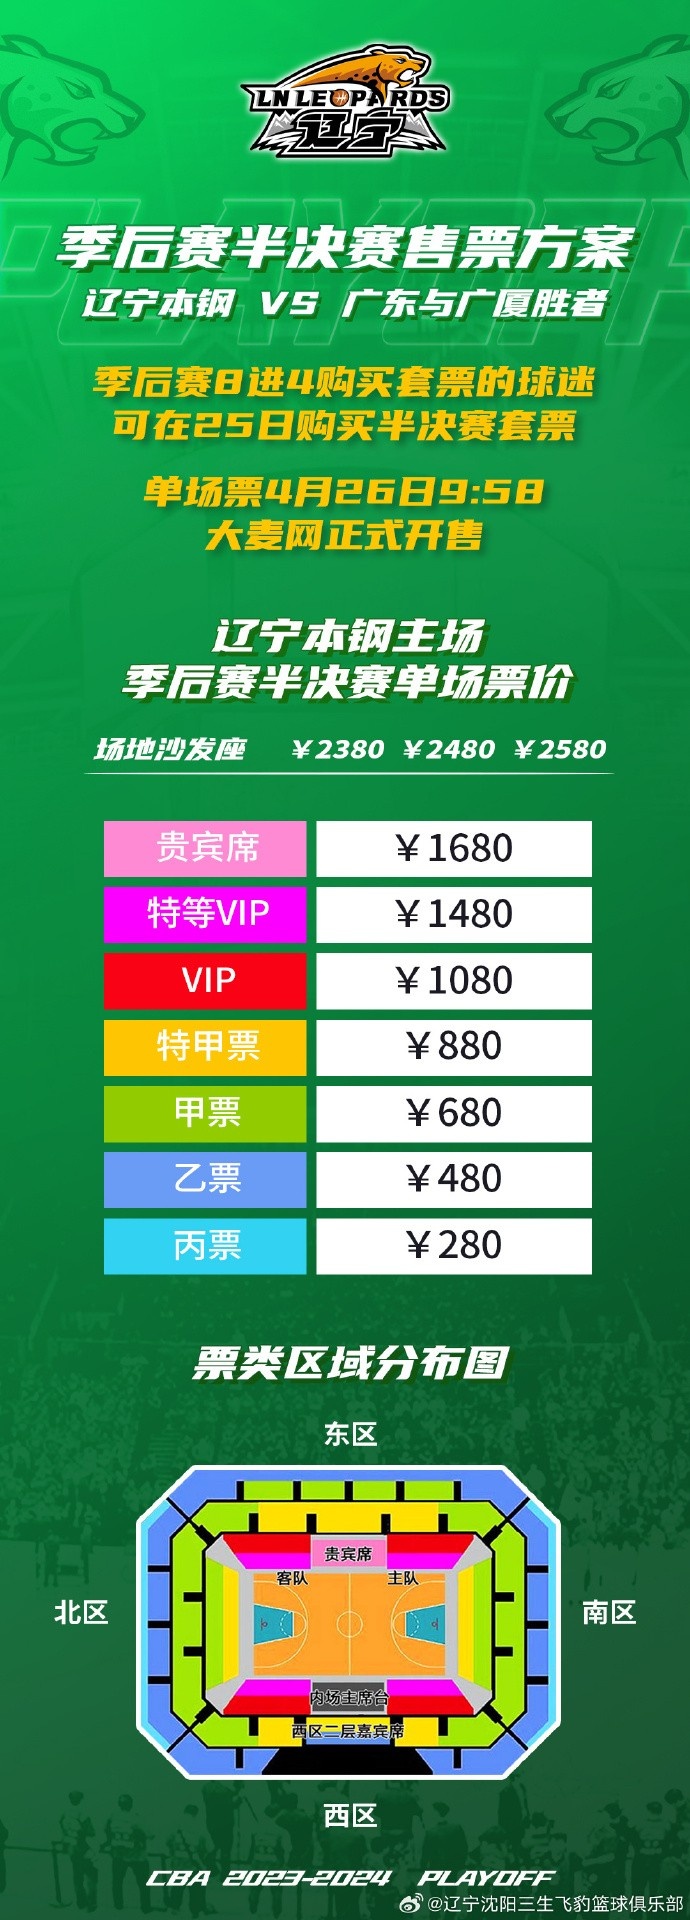 辽宁本钢队半决赛门票26日9时58分大麦网正式发售